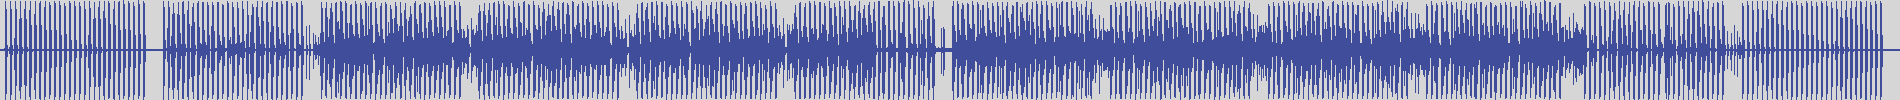 nf_boyz_records [NFY017] Xeno Phobik - The Clan [Tilt Mixonik Edit] audio wave form